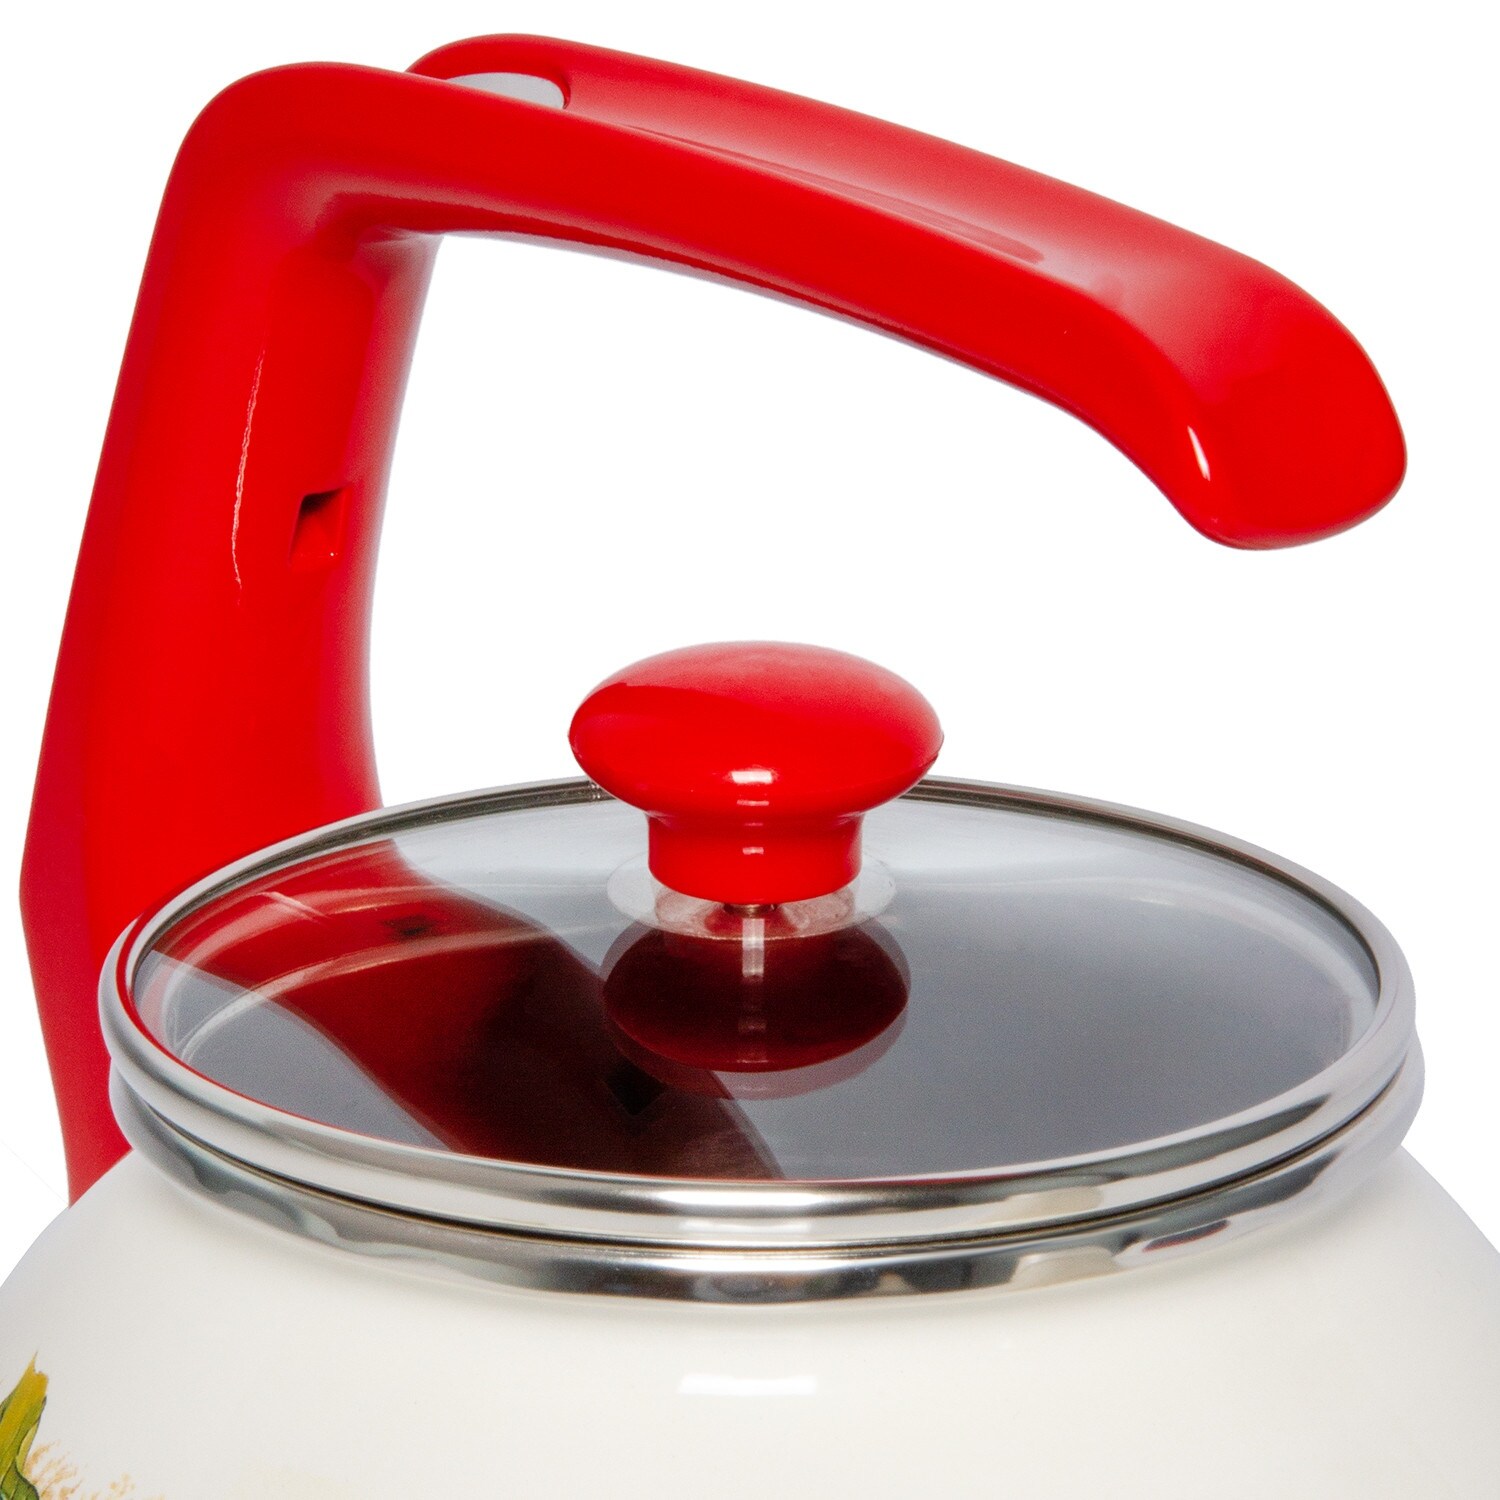 STP-Goods 2.7-Quart Red White Polka Dot Enamel on Steel Tea Kettle